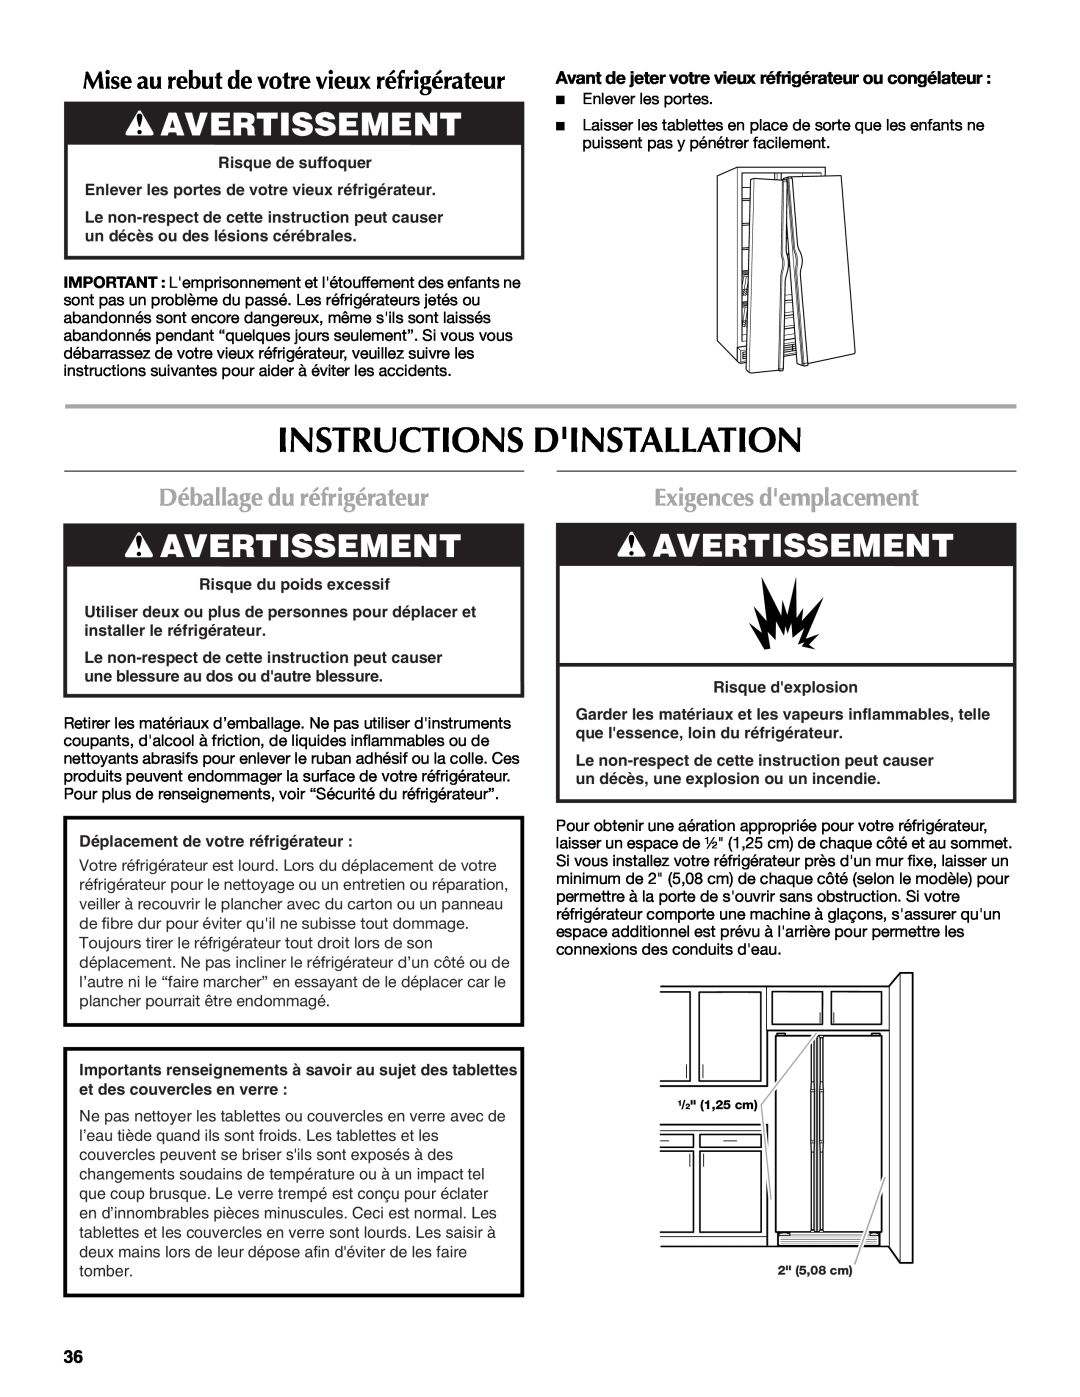 Maytag W10214488A Instructions Dinstallation, Avertissement, Déballage du réfrigérateur, Exigences demplacement 